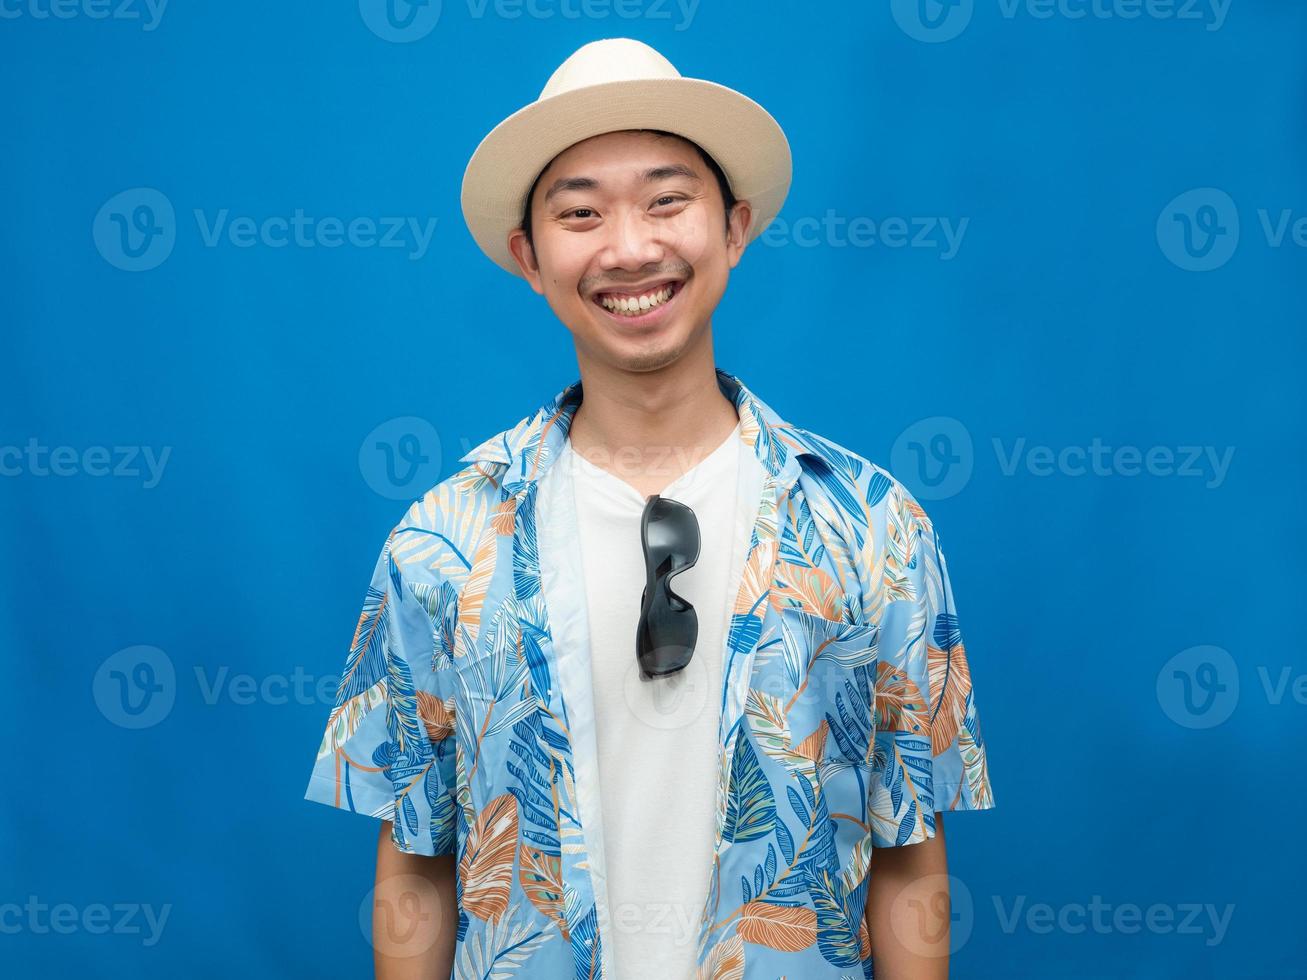 reisender asiatischer mann trägt hut mit sonnenbrille glücklichem lächeln blauem hintergrund foto